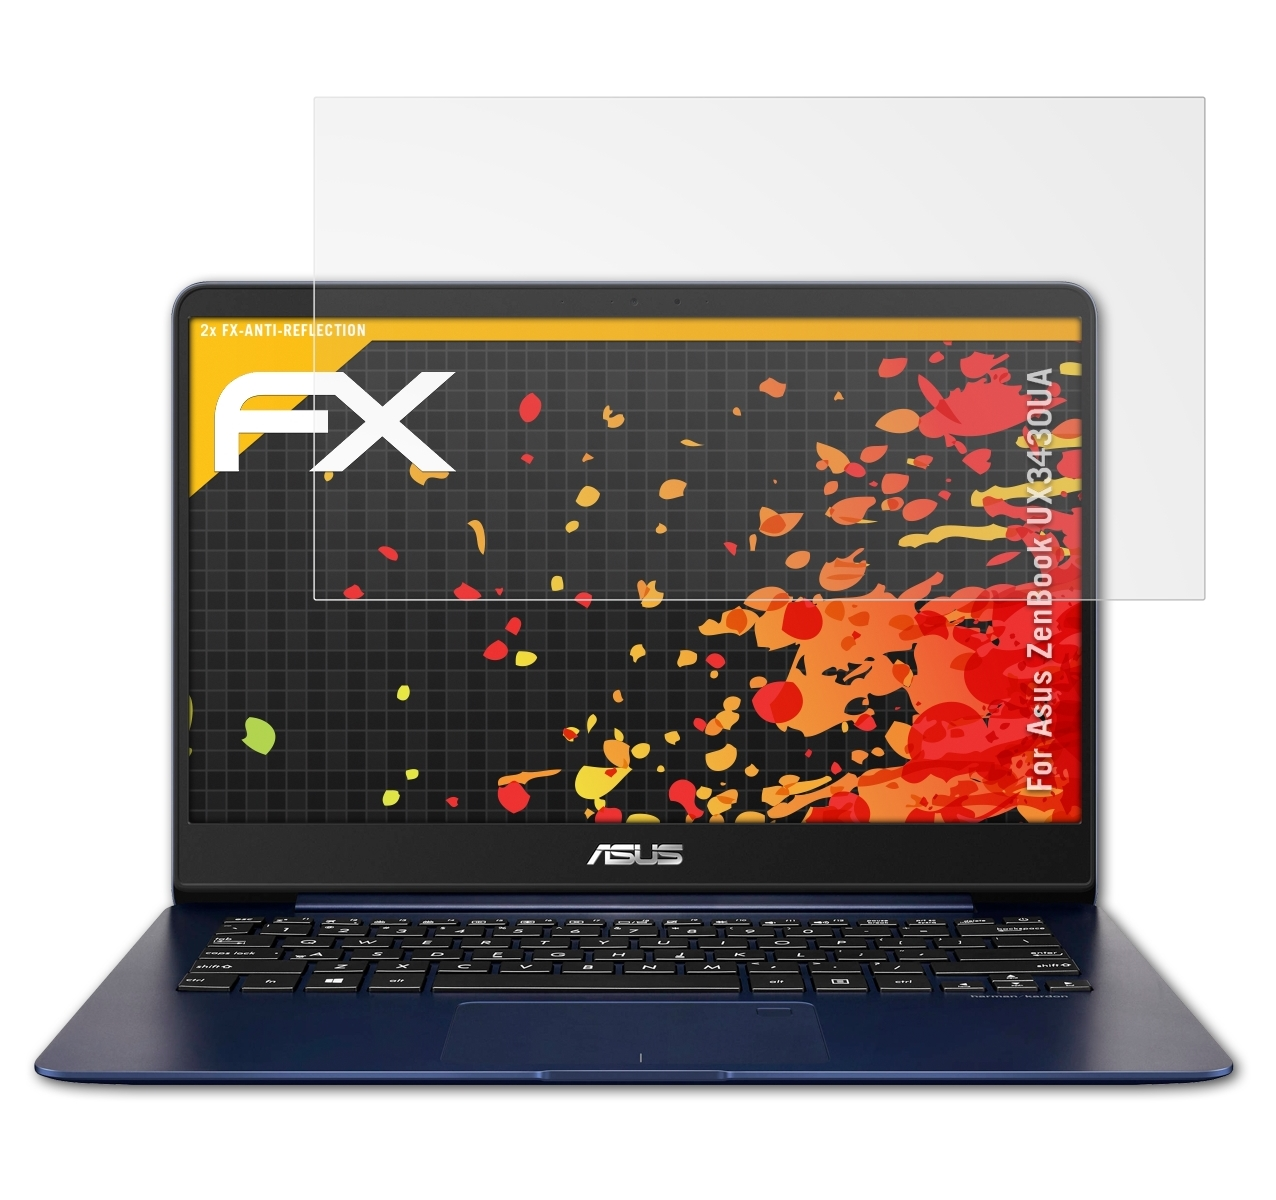 Asus 2x ATFOLIX Displayschutz(für (UX3430UA)) ZenBook FX-Antireflex